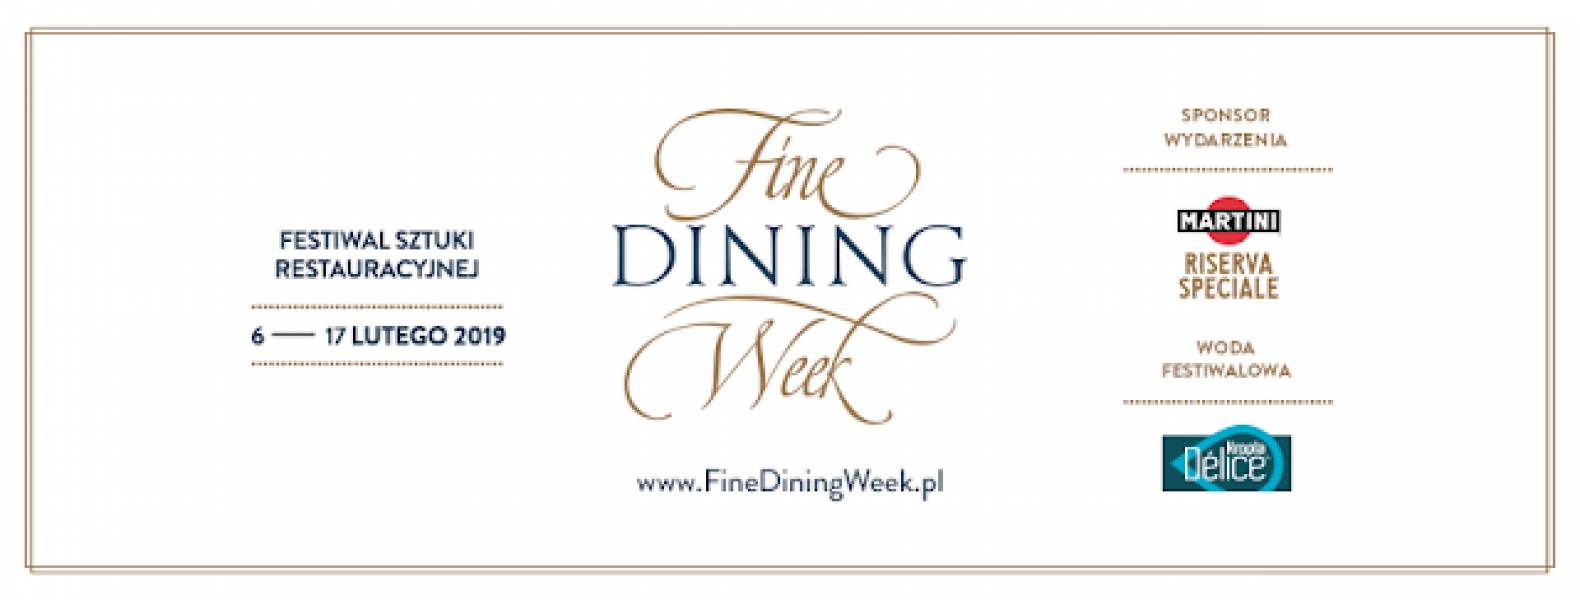 Fine Dining Week w Restauracji UMAMI Piaty Smak